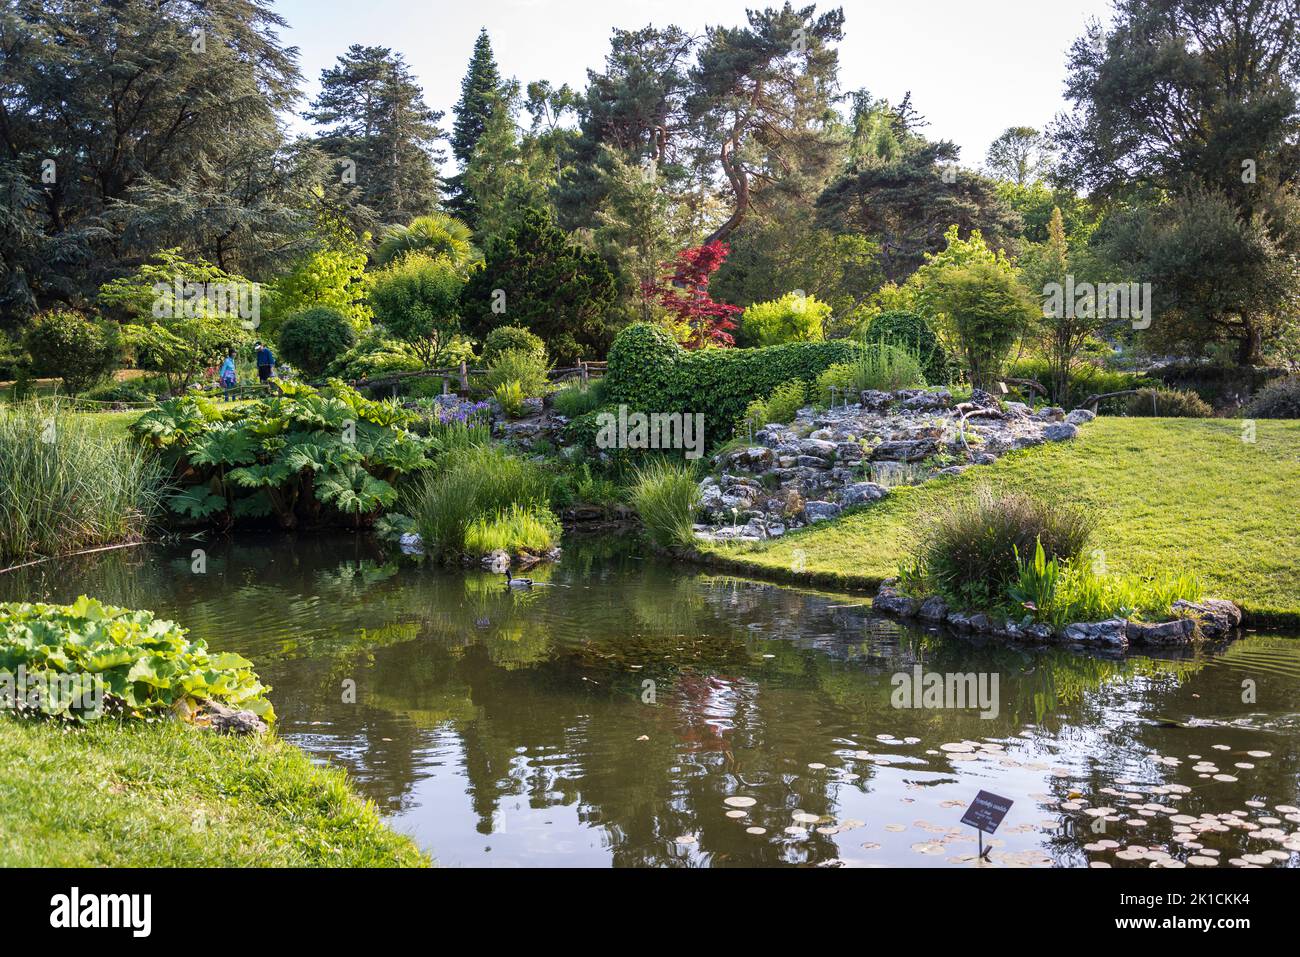 Landscaped garden with pond, Botanical Garden, Geneva, Switzerland Stock Photo